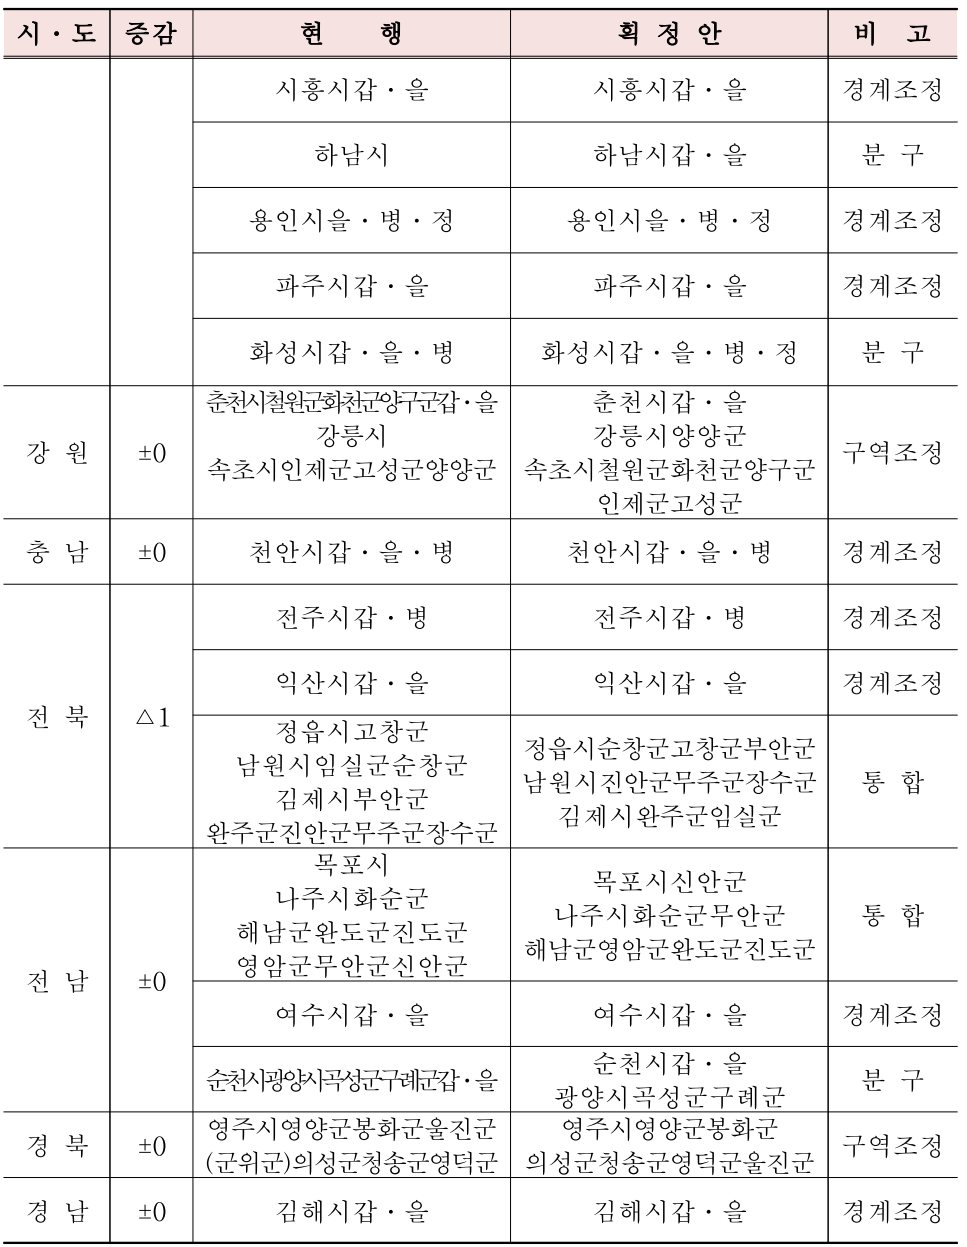 22대 총선 시도별 선거획정안 조정내역